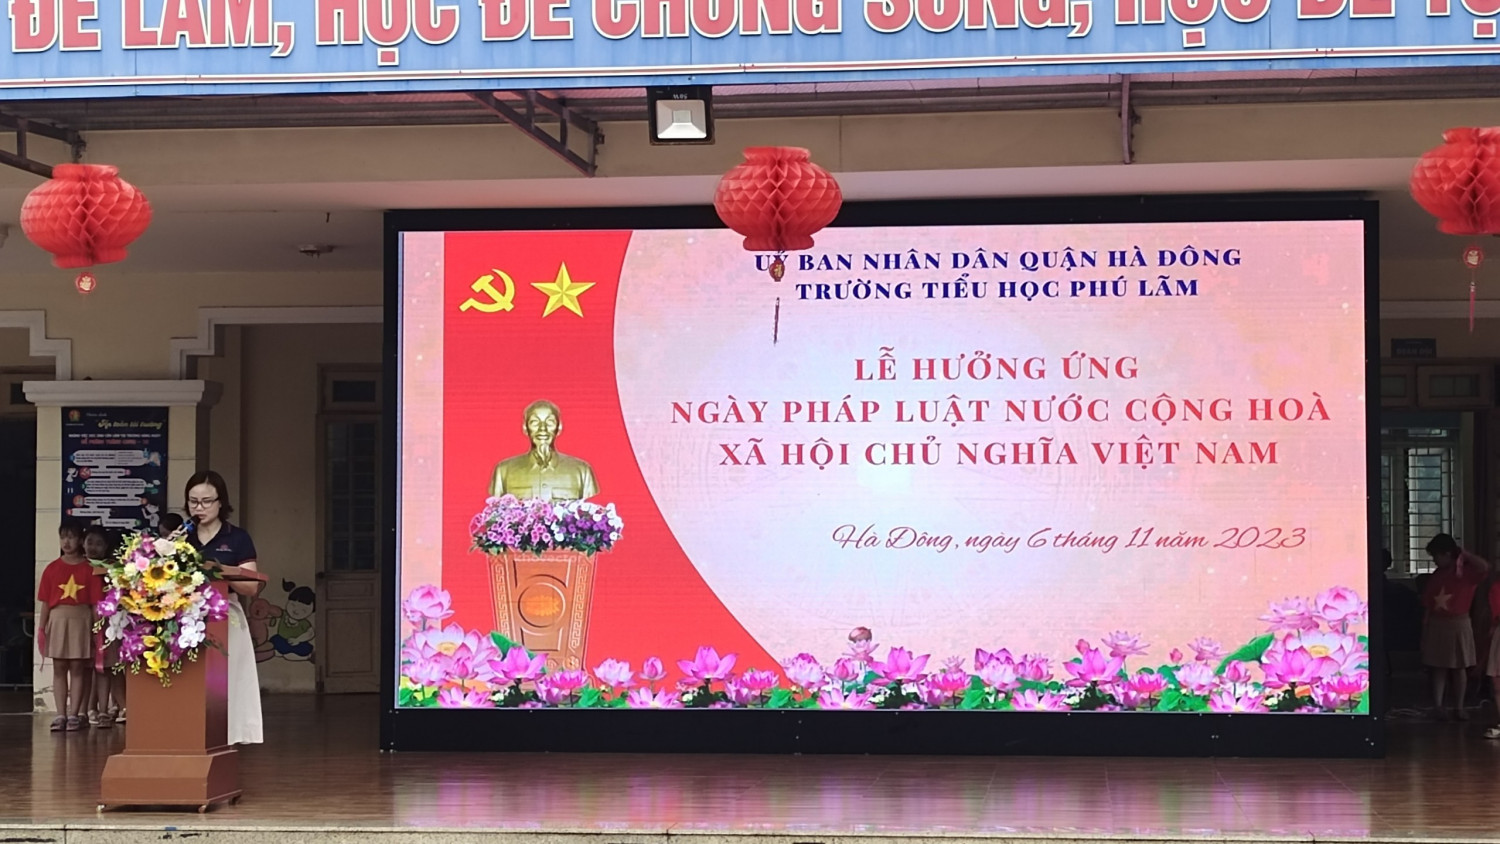 Ảnh lễ hưởng ứng Ngày pháp luật Việt Nam